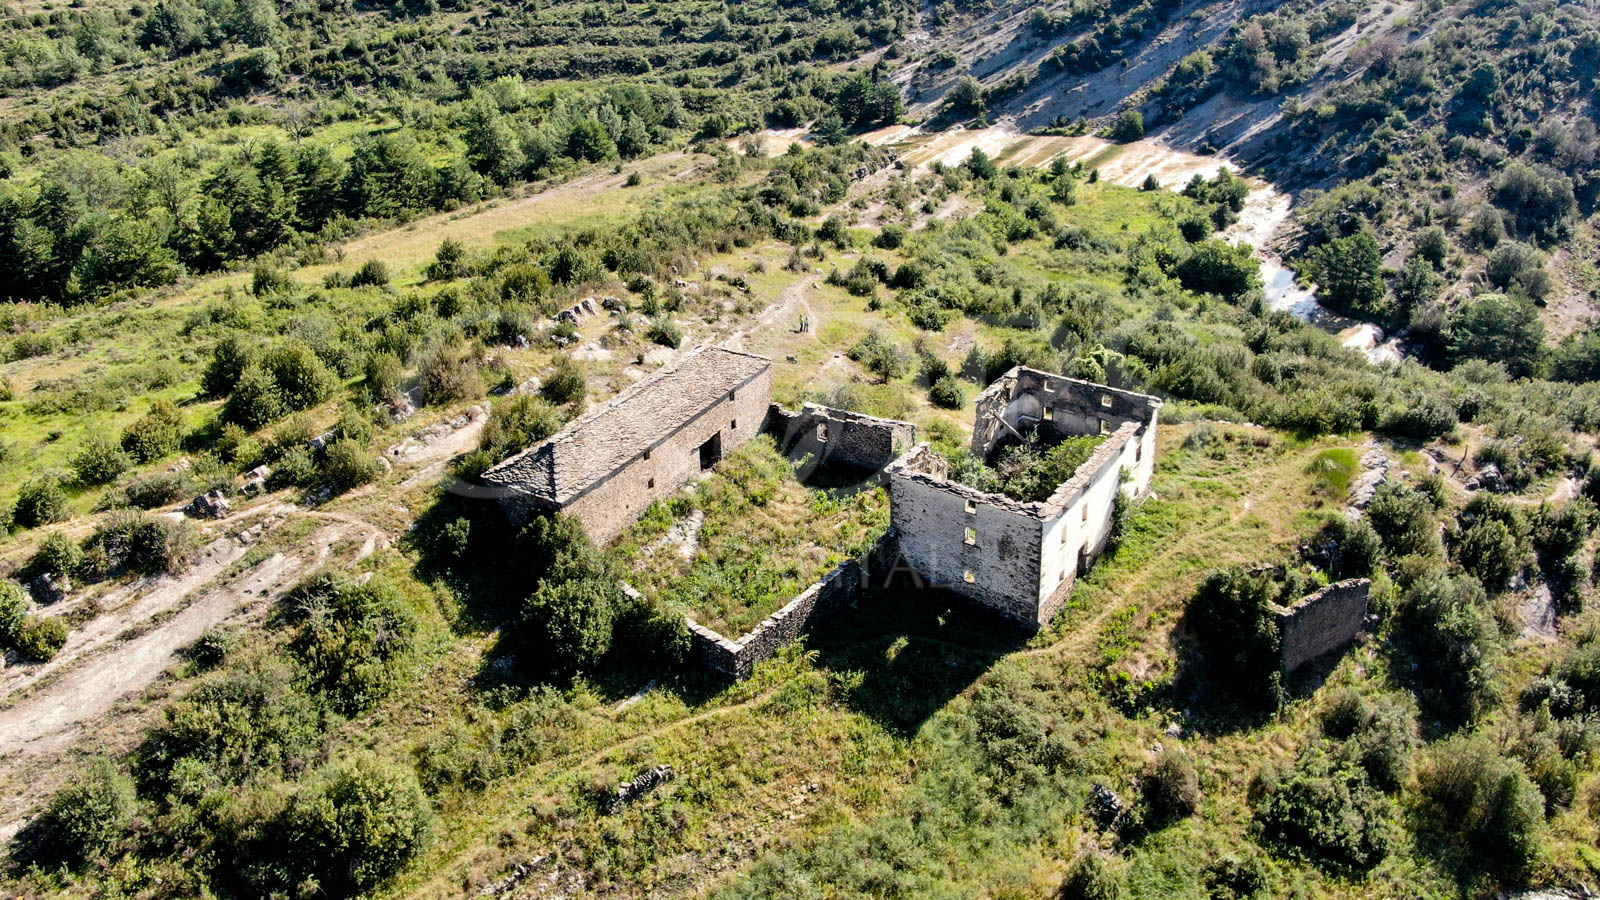 Finca de ocio con masía para reabilitar en Huesca